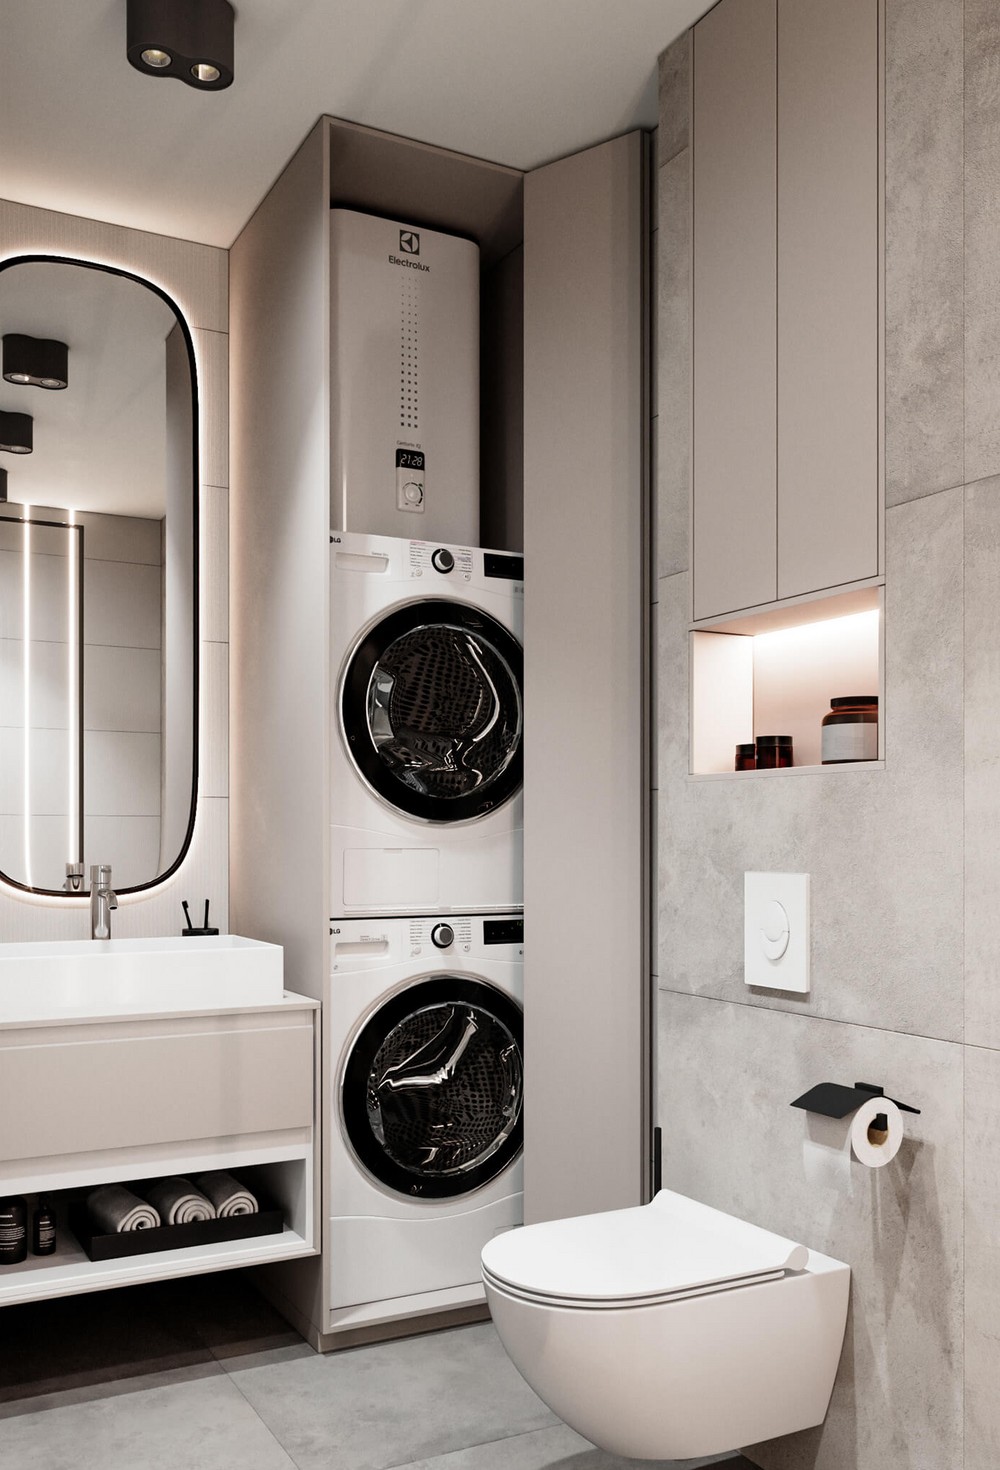 Интересный вариант размещения стиральной машинки и сушилки в пенале с дверками.